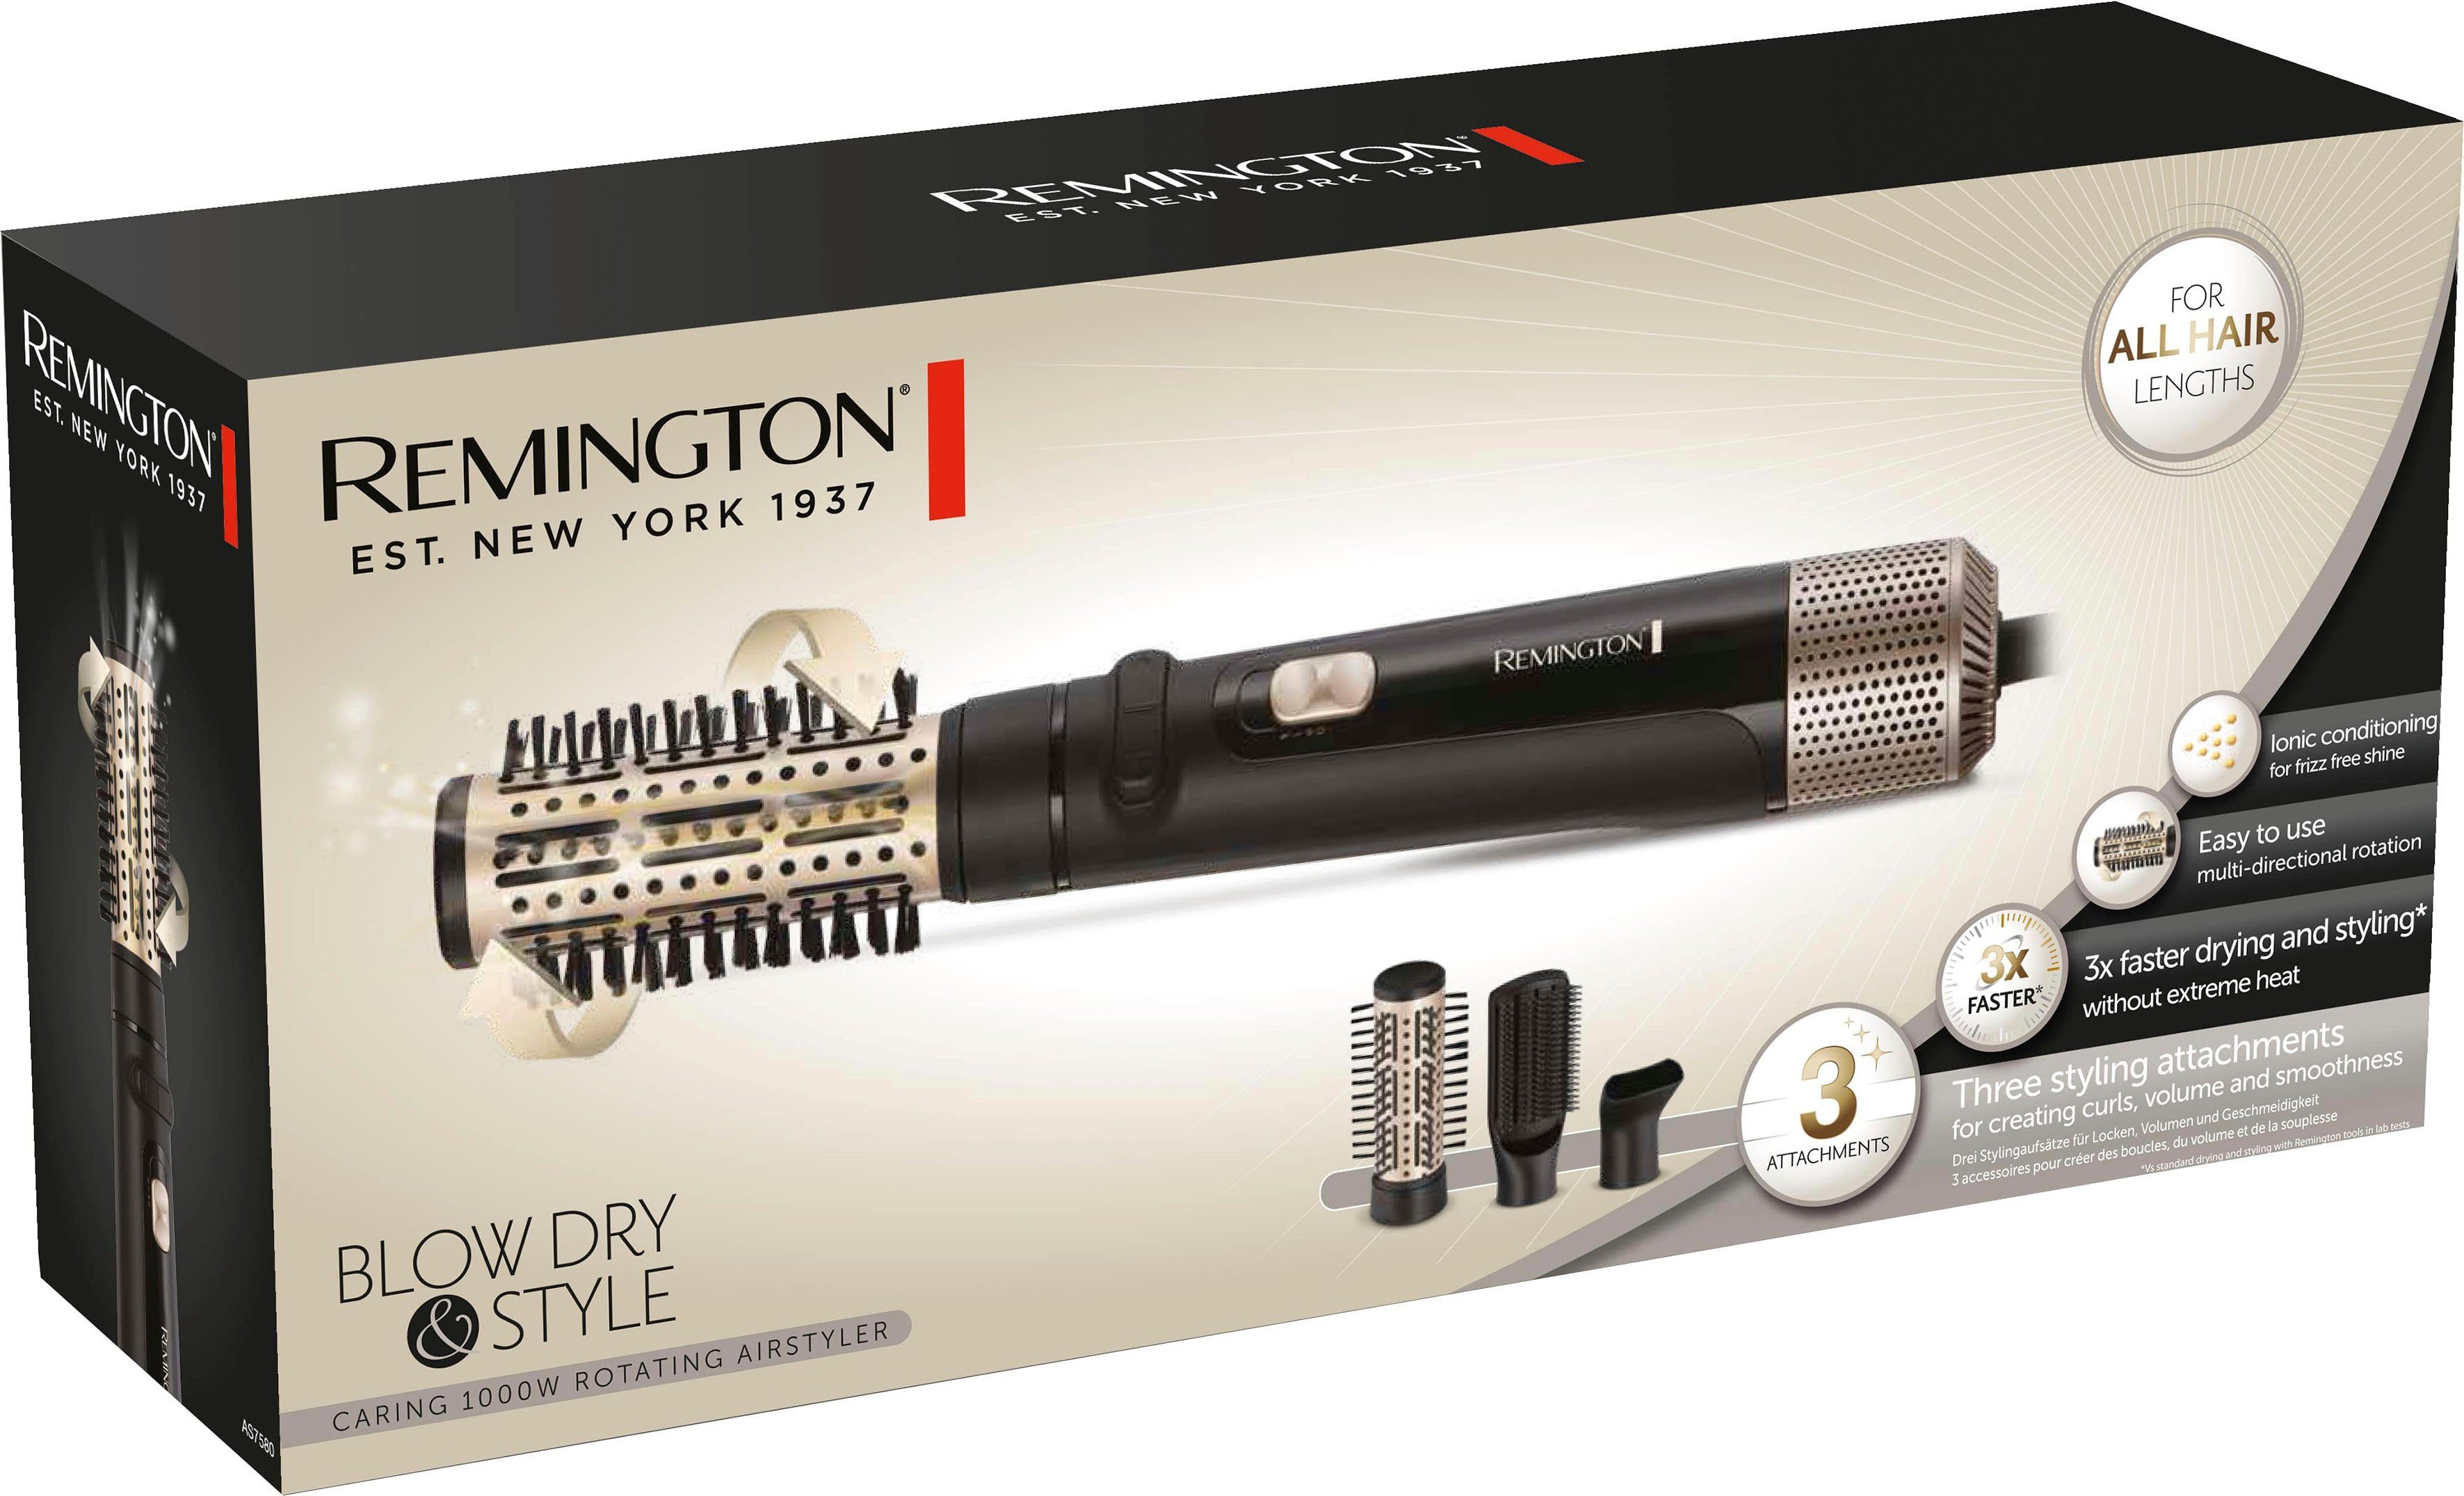 Lockenbürste) Remington AS7580, Warmluftbürste Airstyler/Rund-& alle Watt Blow Dry Style Haarlängen (rotierender 1.000 &